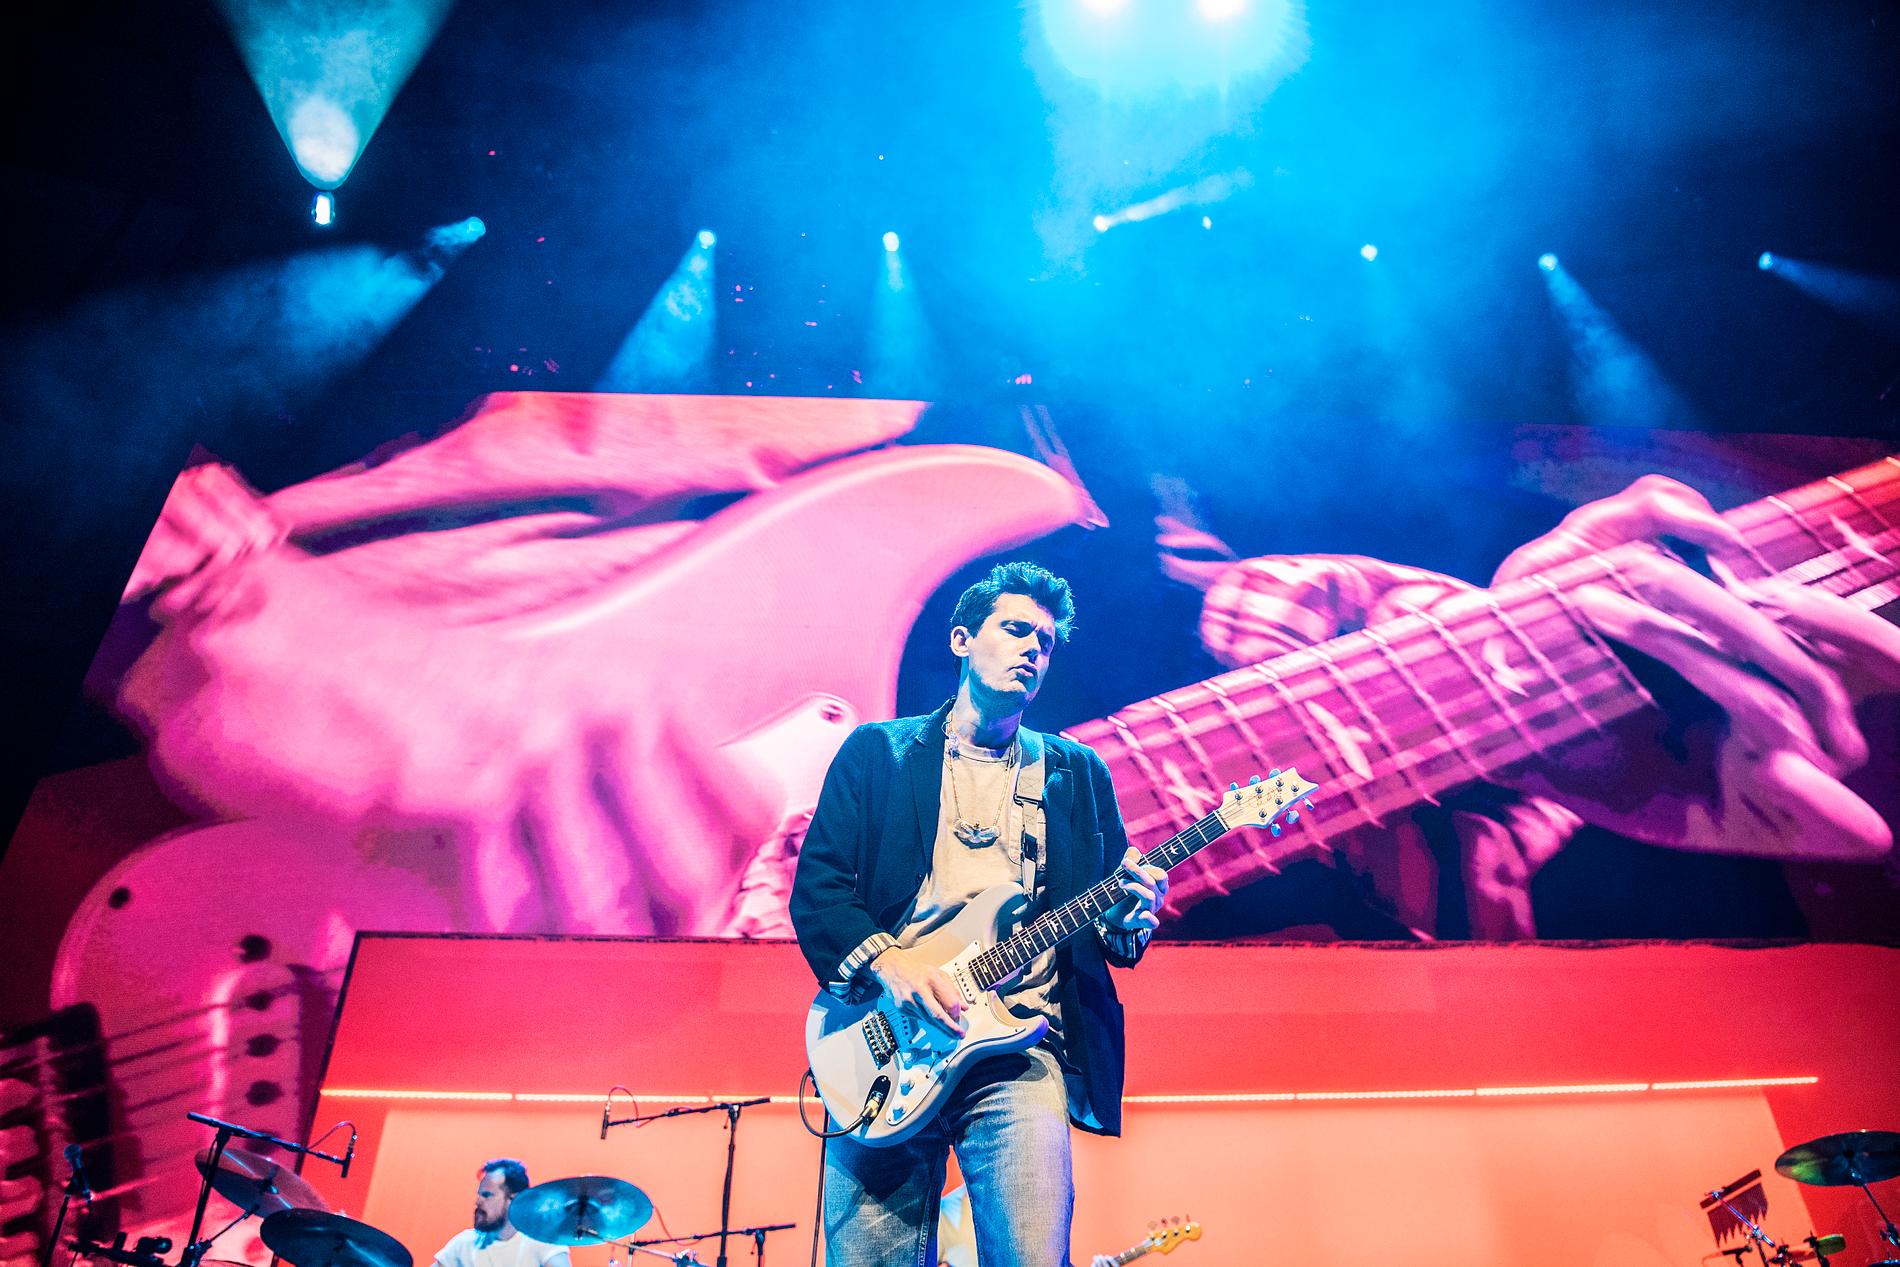 Gitarren är som vanligt i fokus hos John Mayer.